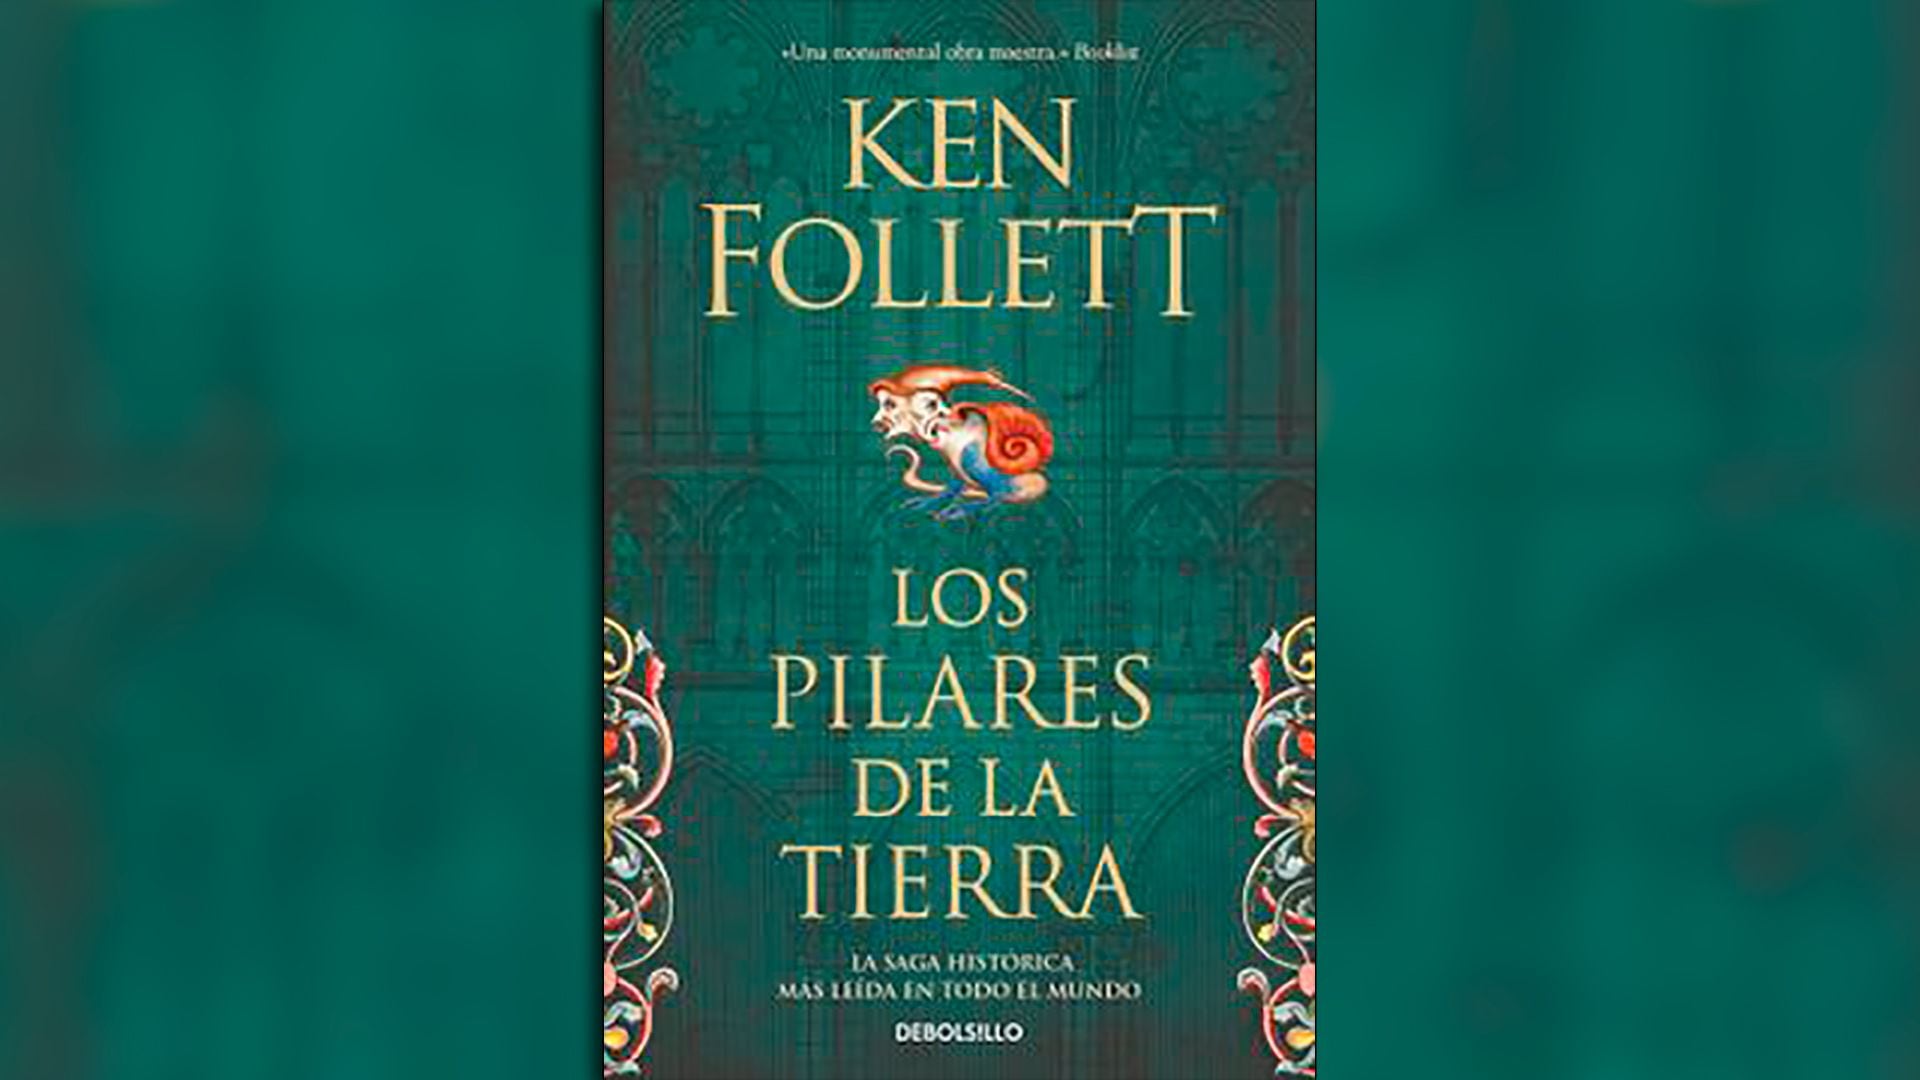 Las mejores ofertas en Libros de ficción & Ken Follett ficción en español